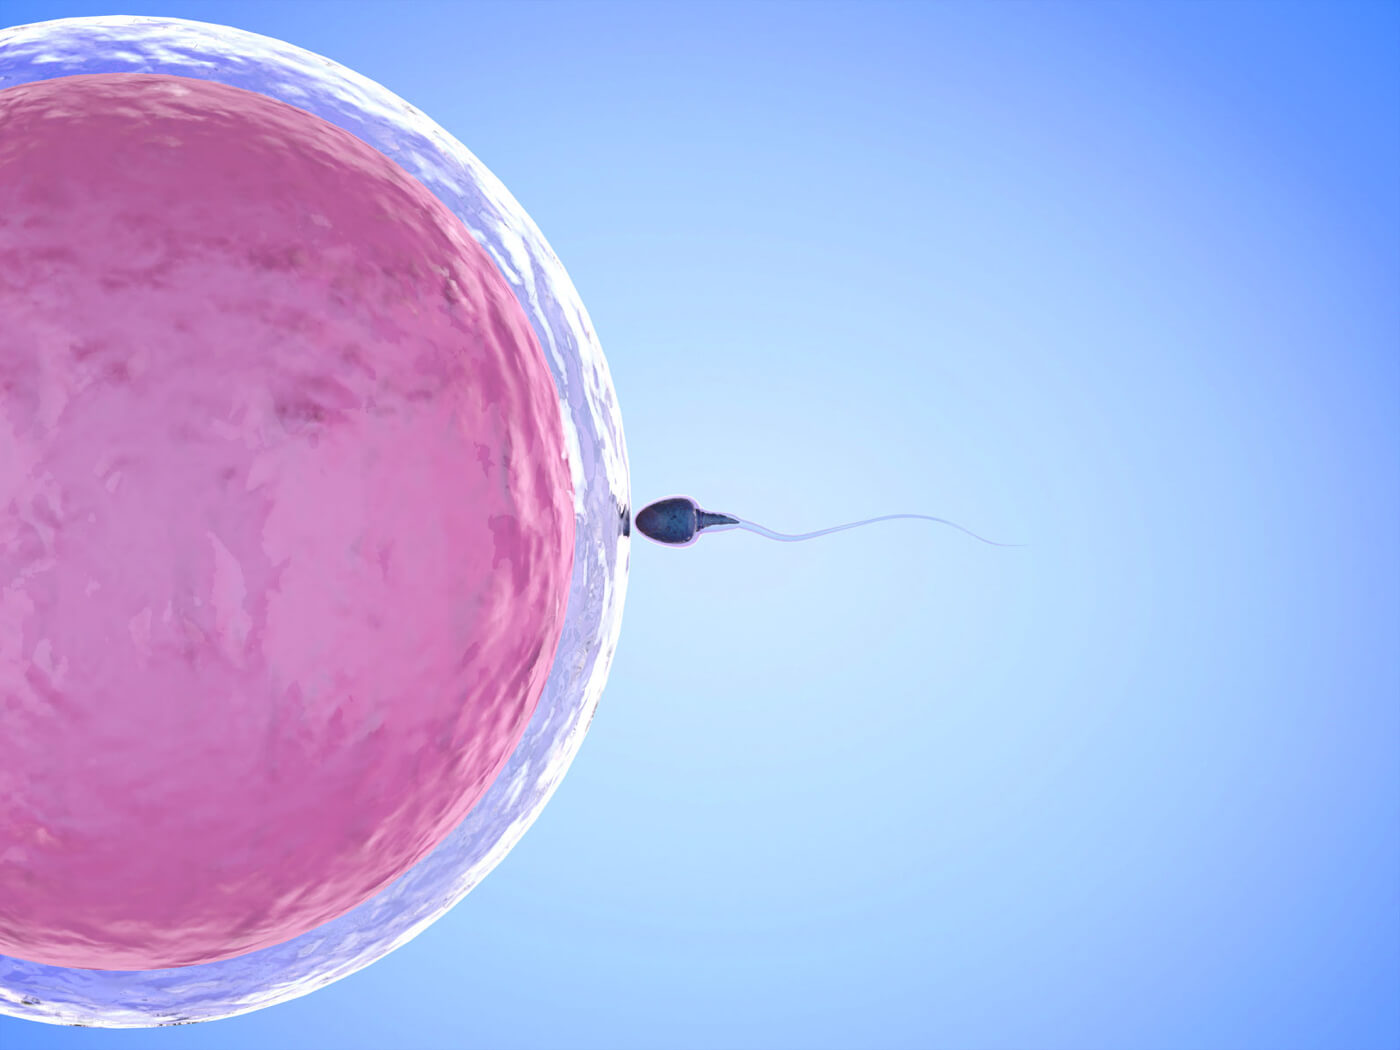 Влияние комплекса Cперотон на функциональные характеристики сперматозоидов у мужчин с идиопатической патозооспермией